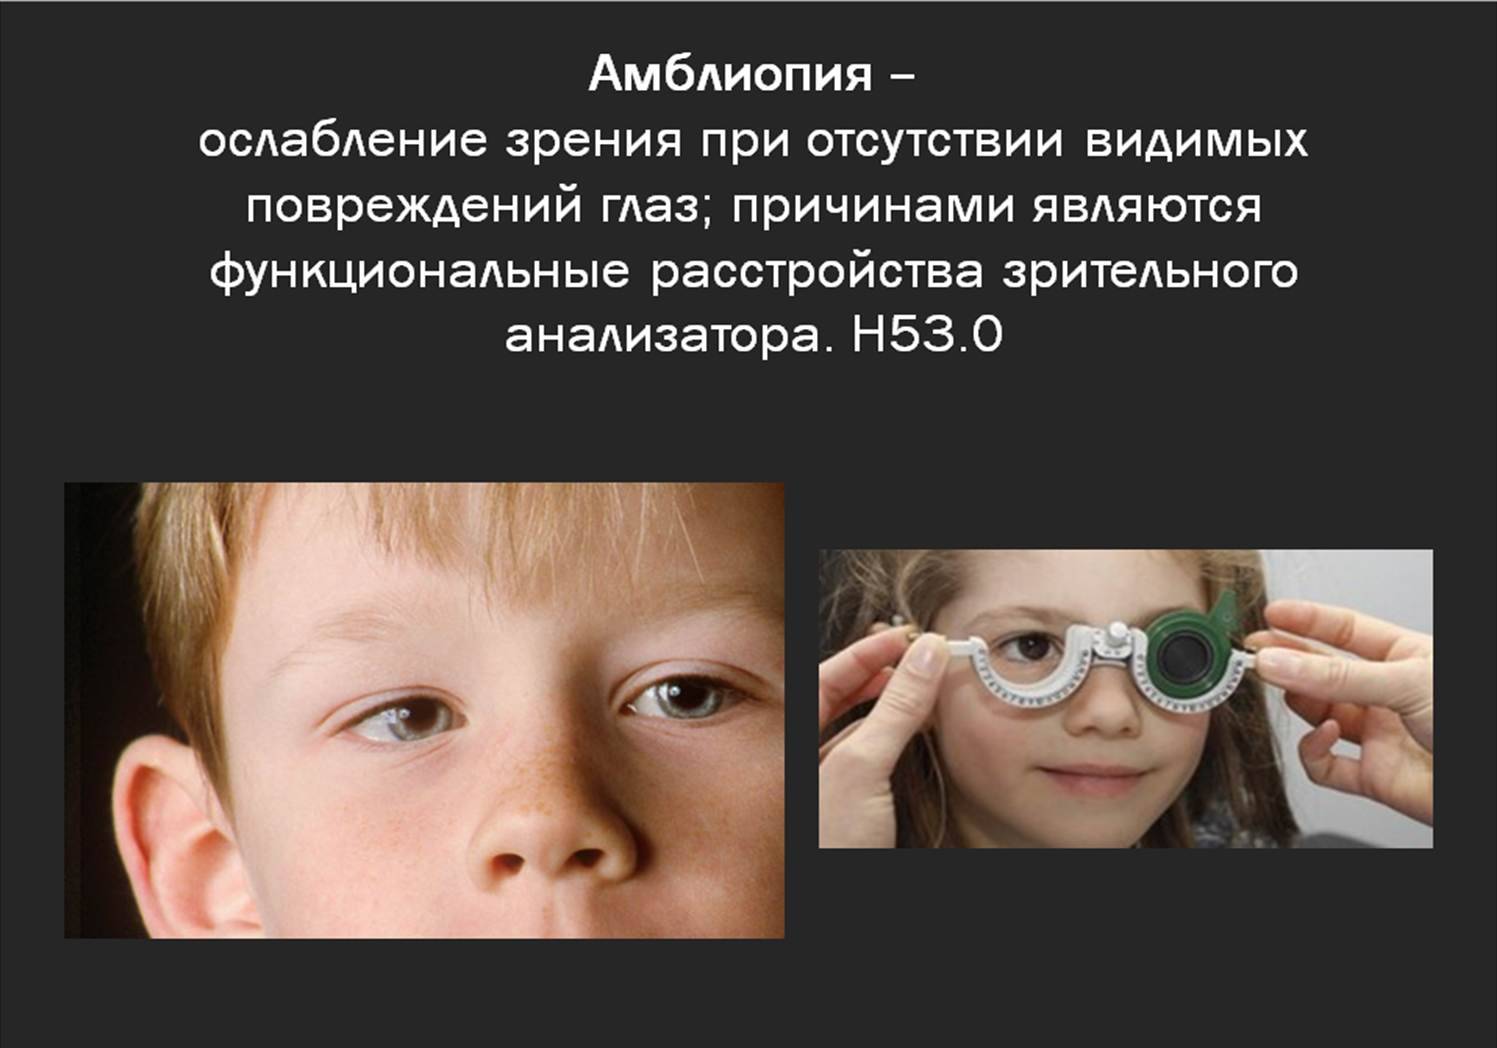 Лазерная коррекция зрения при амблиопии - лечение глаз